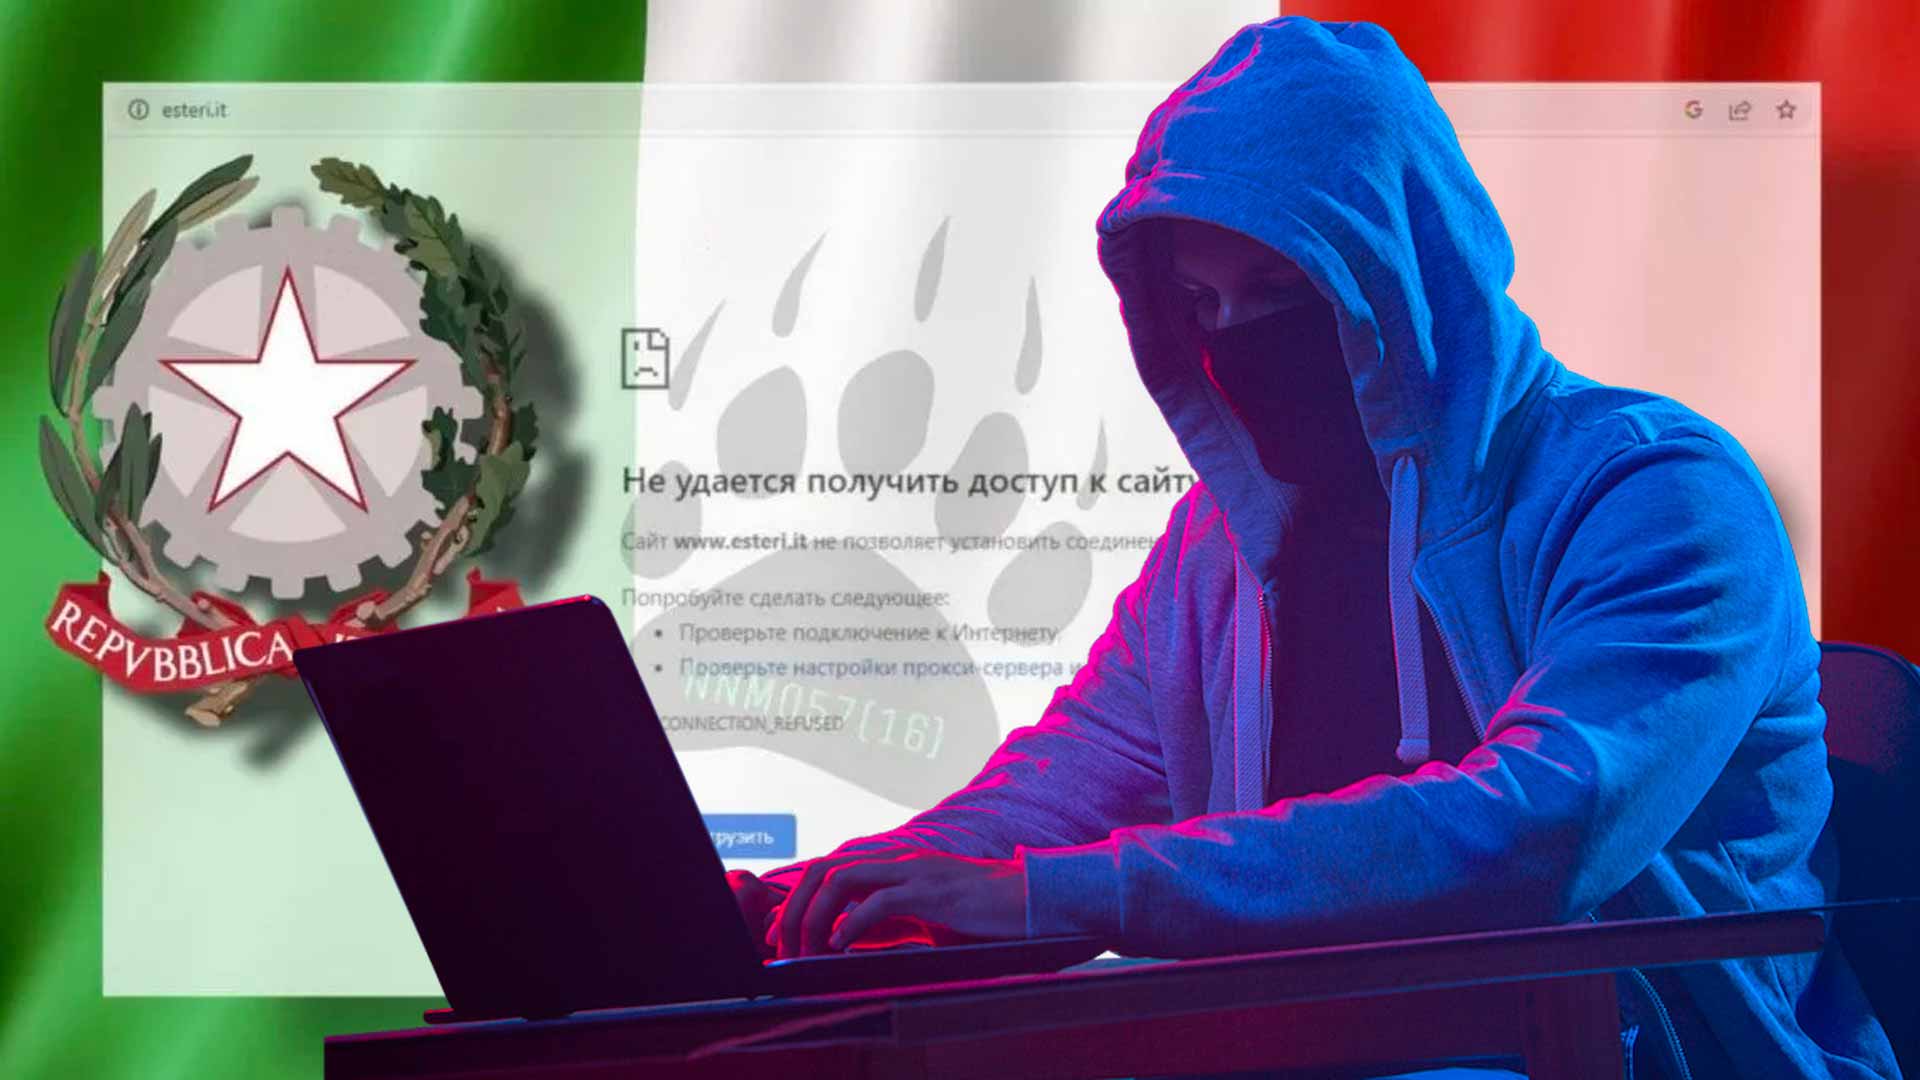 Italia Attacco Hacker